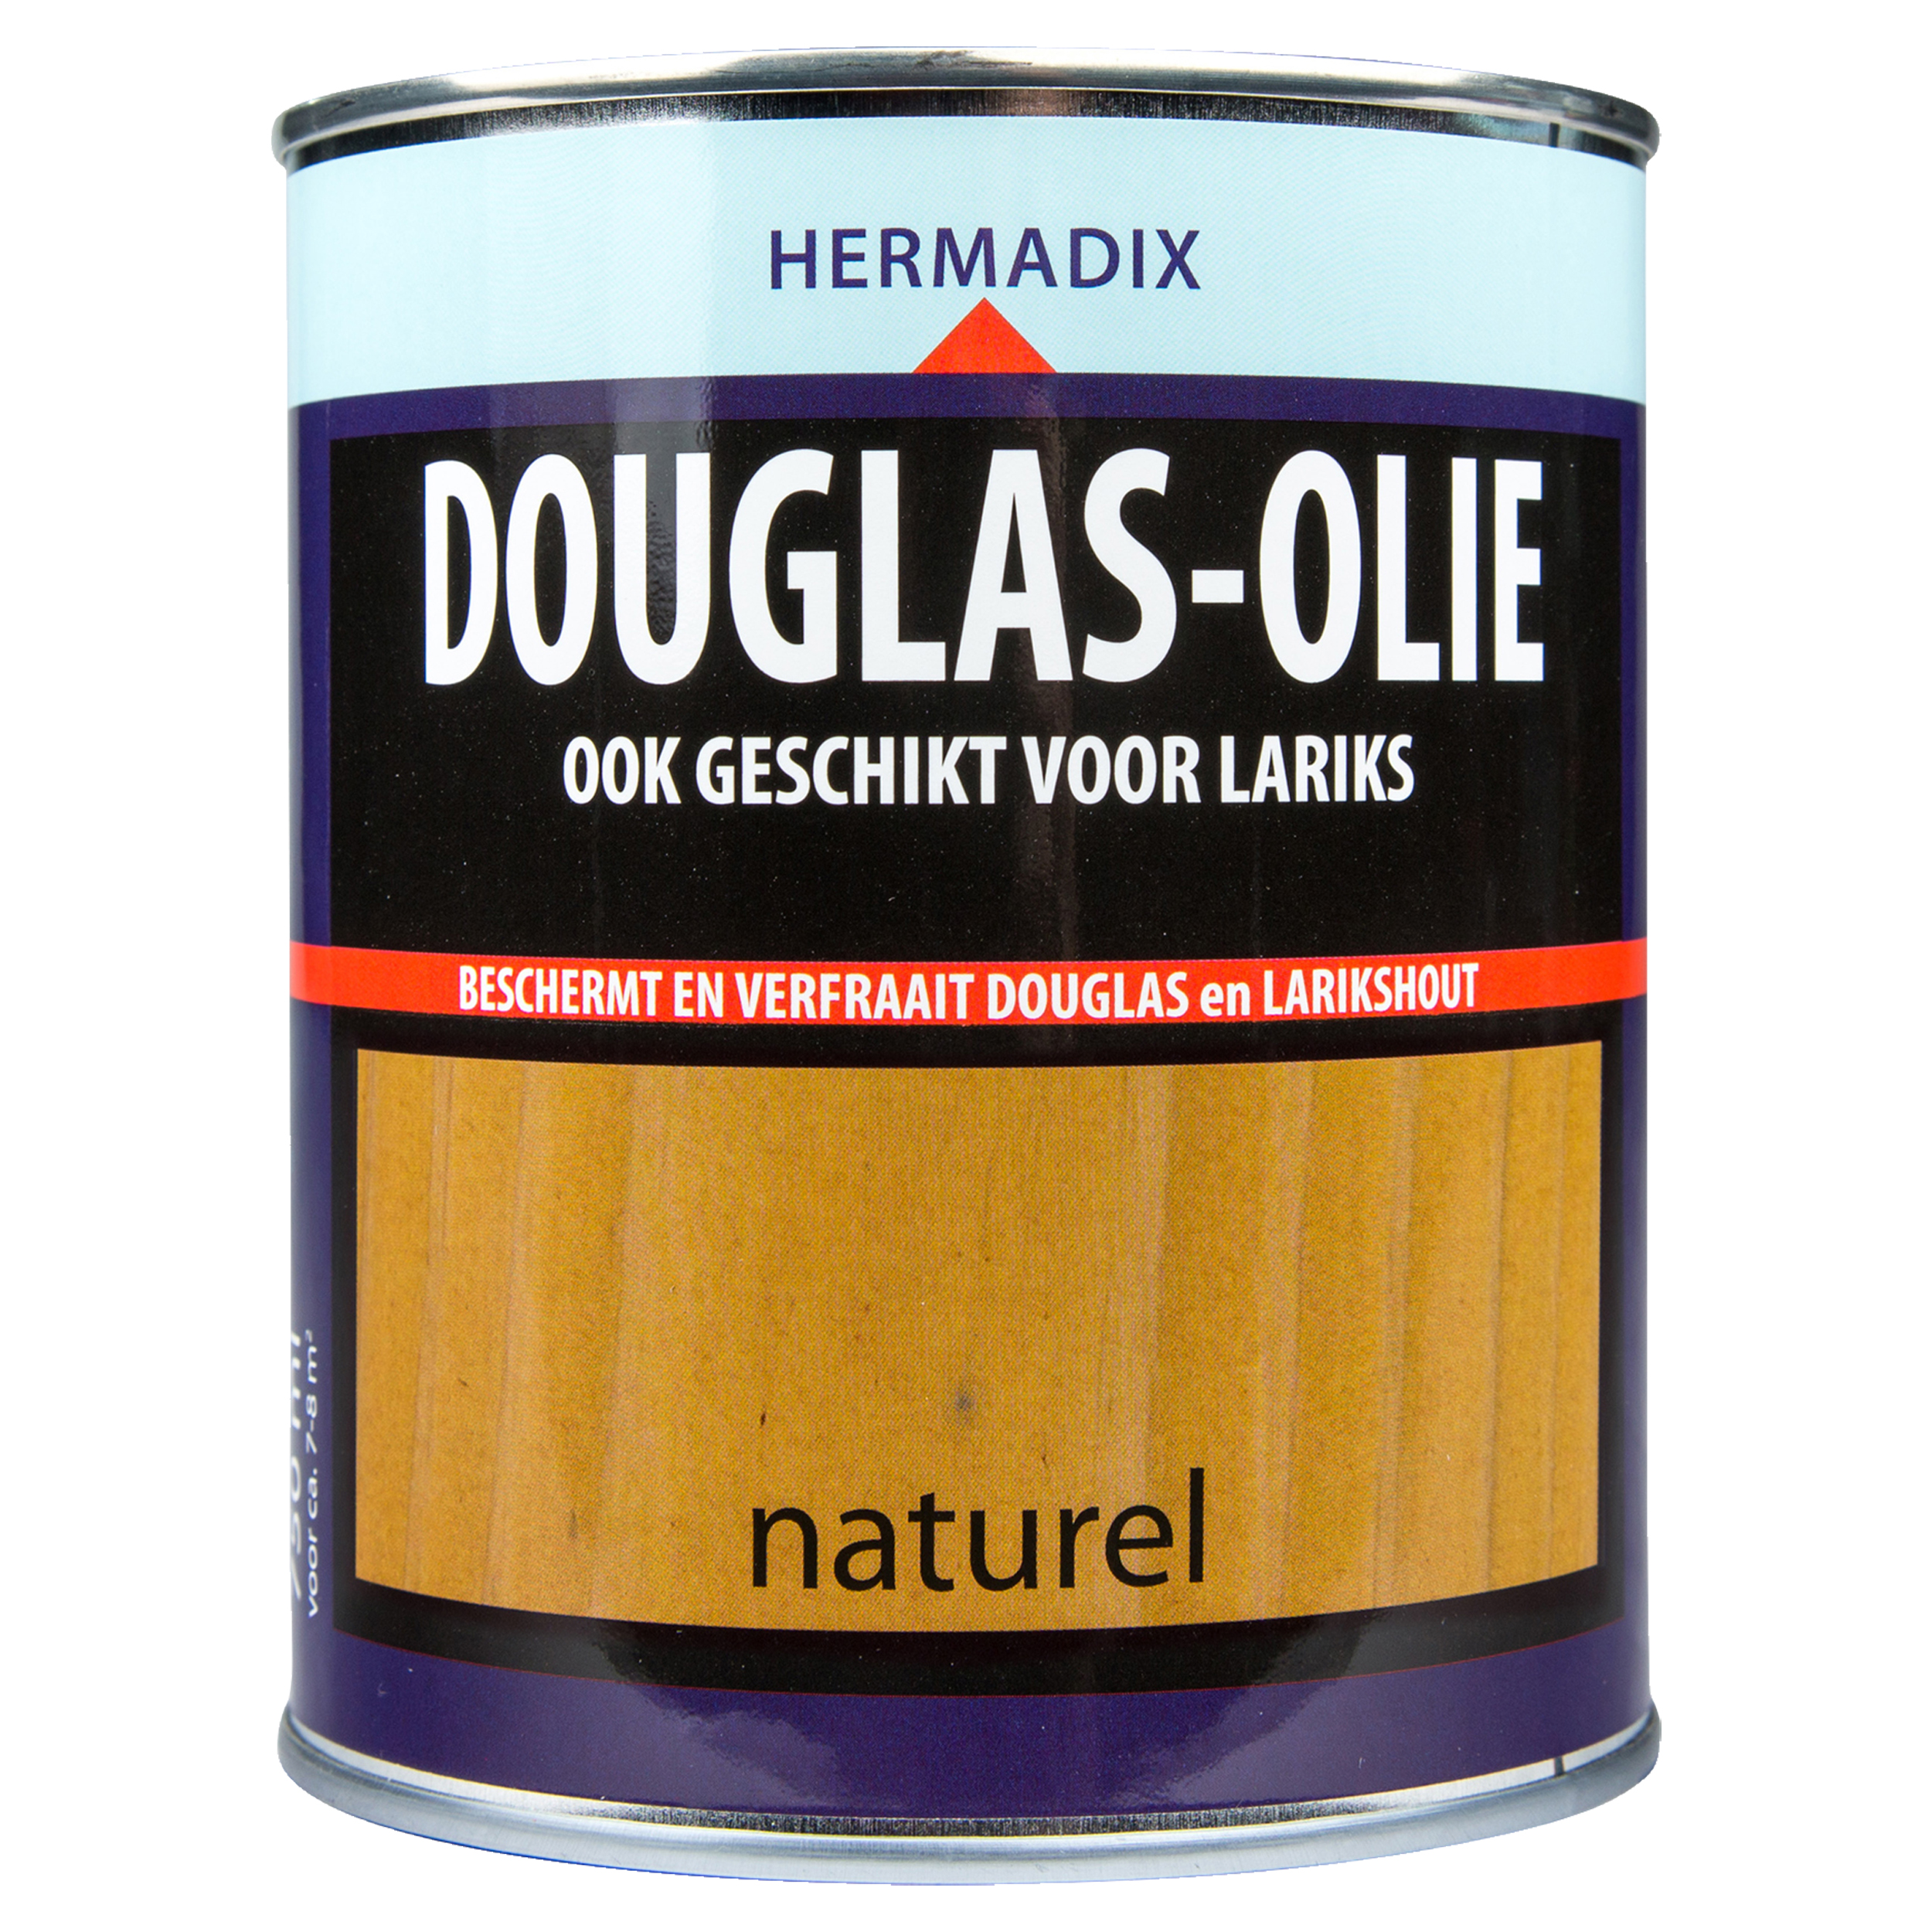 Douglas-olie